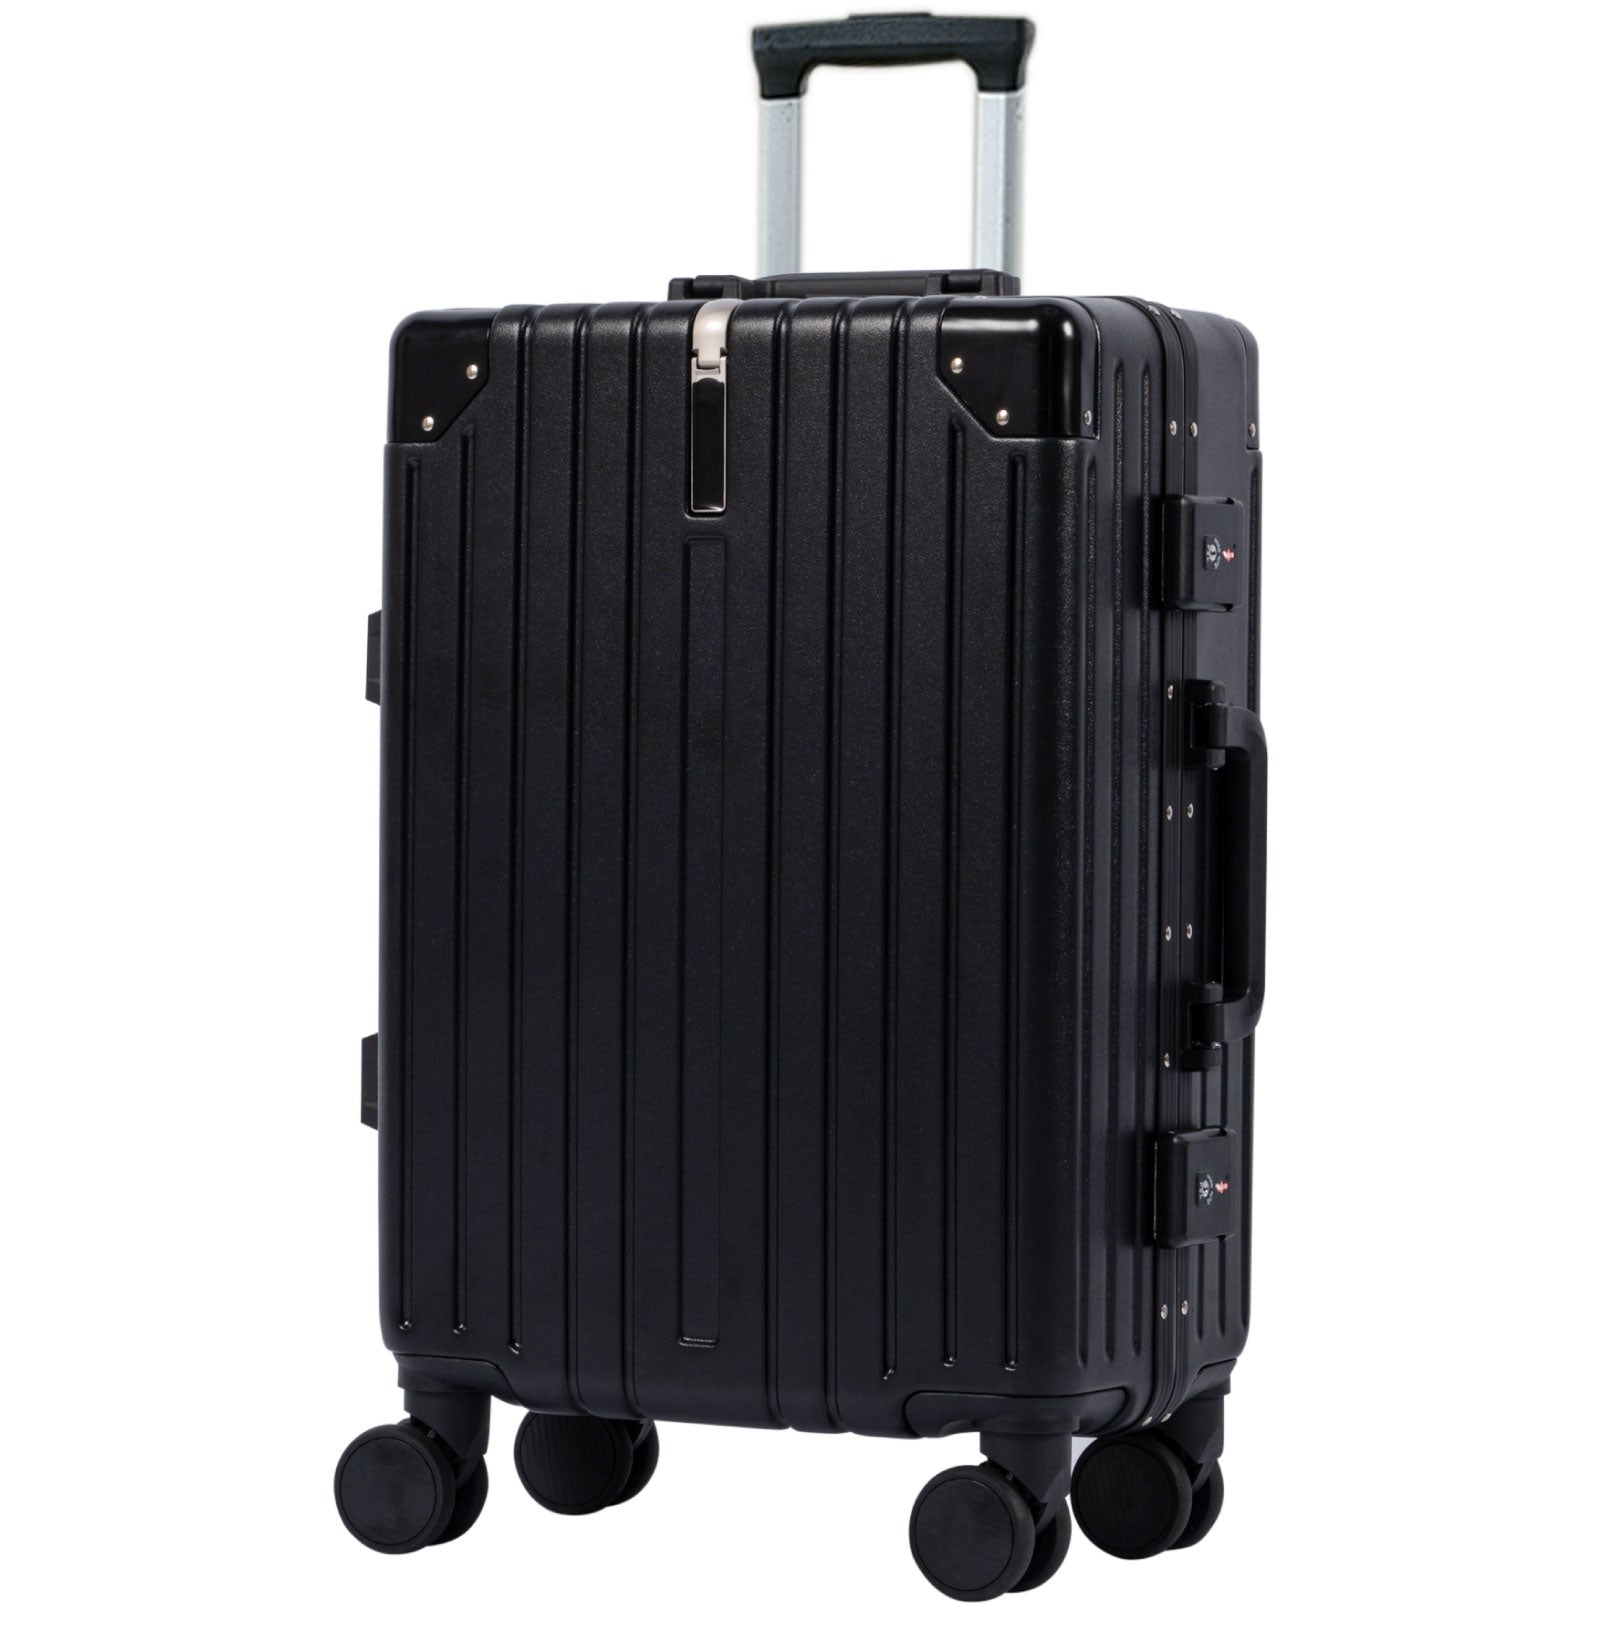 スーツケース フレームタイプ USBポート付き キャリーケース Sサイズ 38L 機内持ち込み 5カラー選ぶ 1-3日用 泊まる カップホルダー付き 軽量 大容量 多収納ポケット トランク 修学旅行 海外旅行 国内旅行 sc176-20